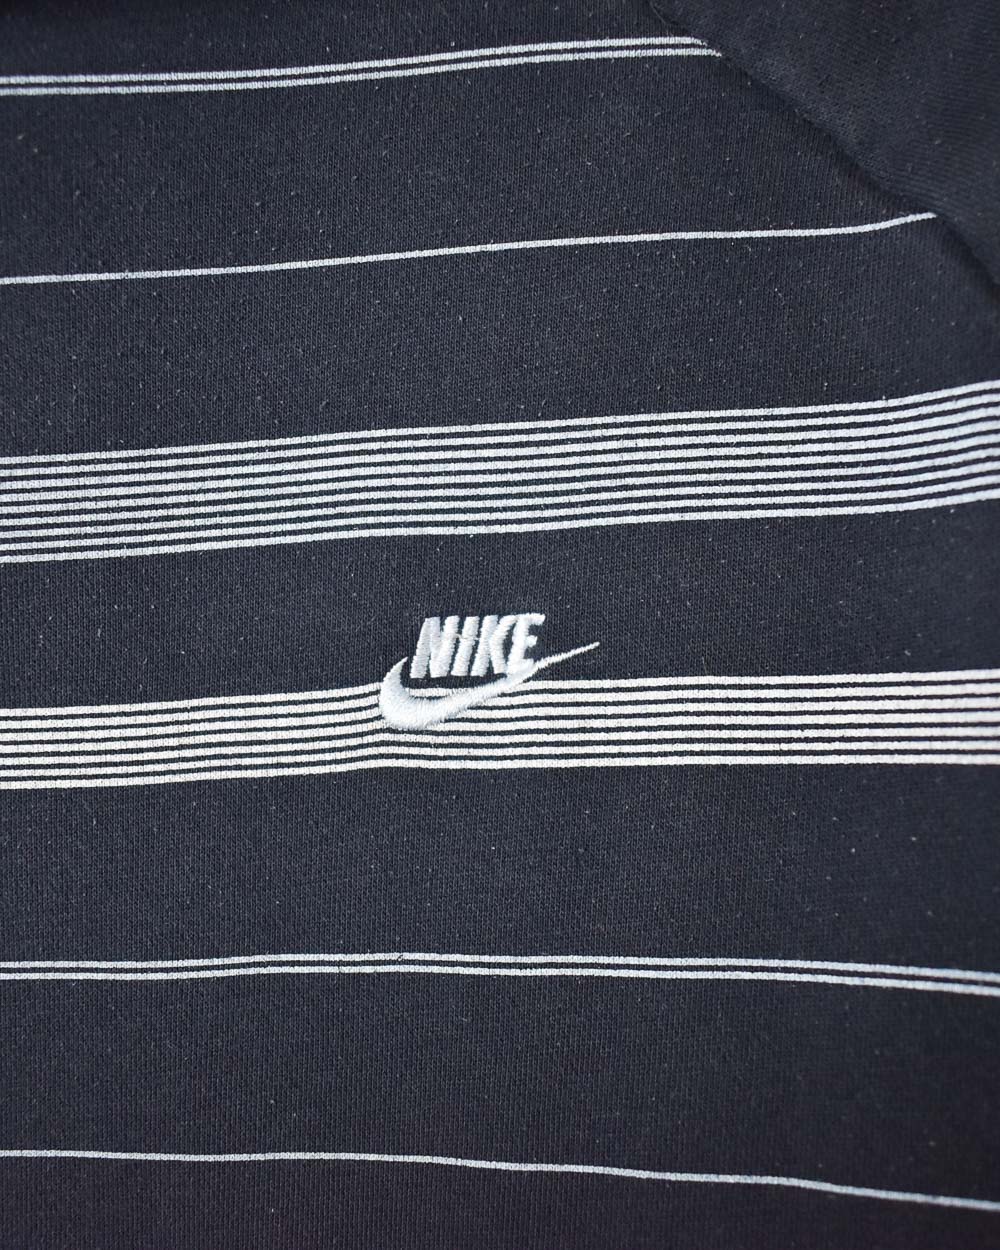 Navy Nike Striped Hoodie - Large